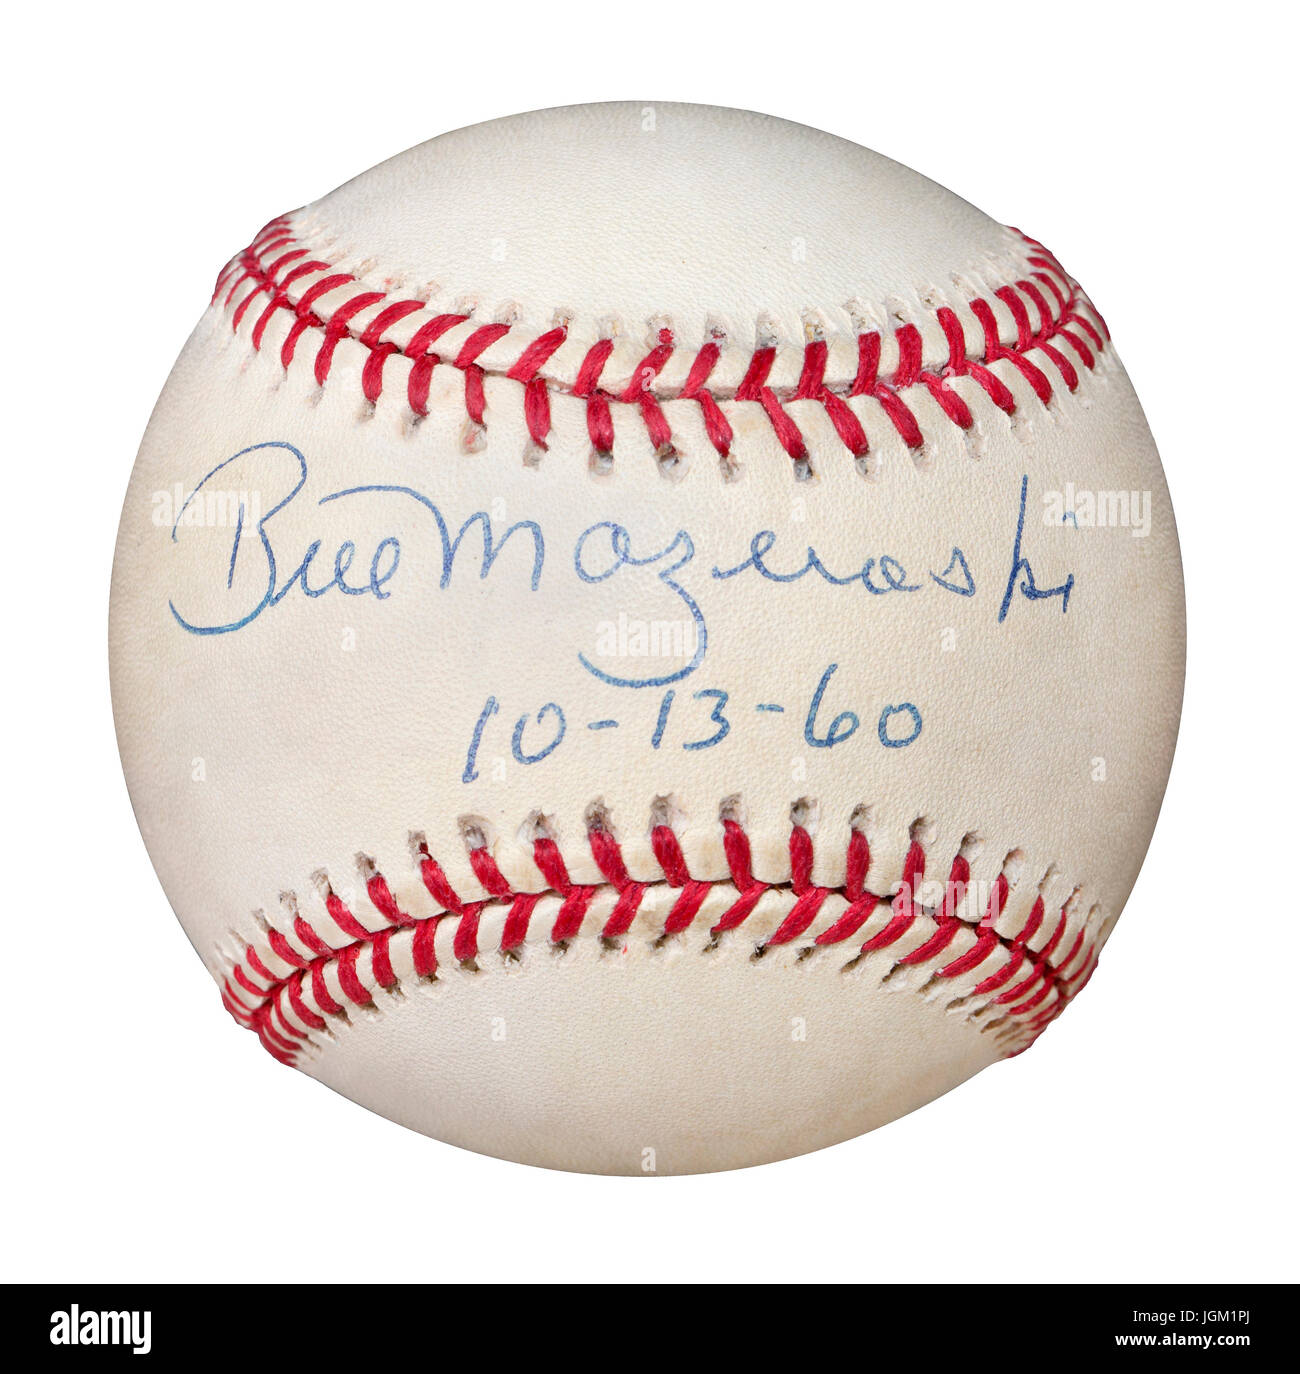 Firmato baseball da Pittsburgh Pirate secondo baseman Bill Mazeroski datata 10-13-60. Bill è l'unico giocatore nella storia MLB per colpire una passeggiata fuori casa Foto Stock